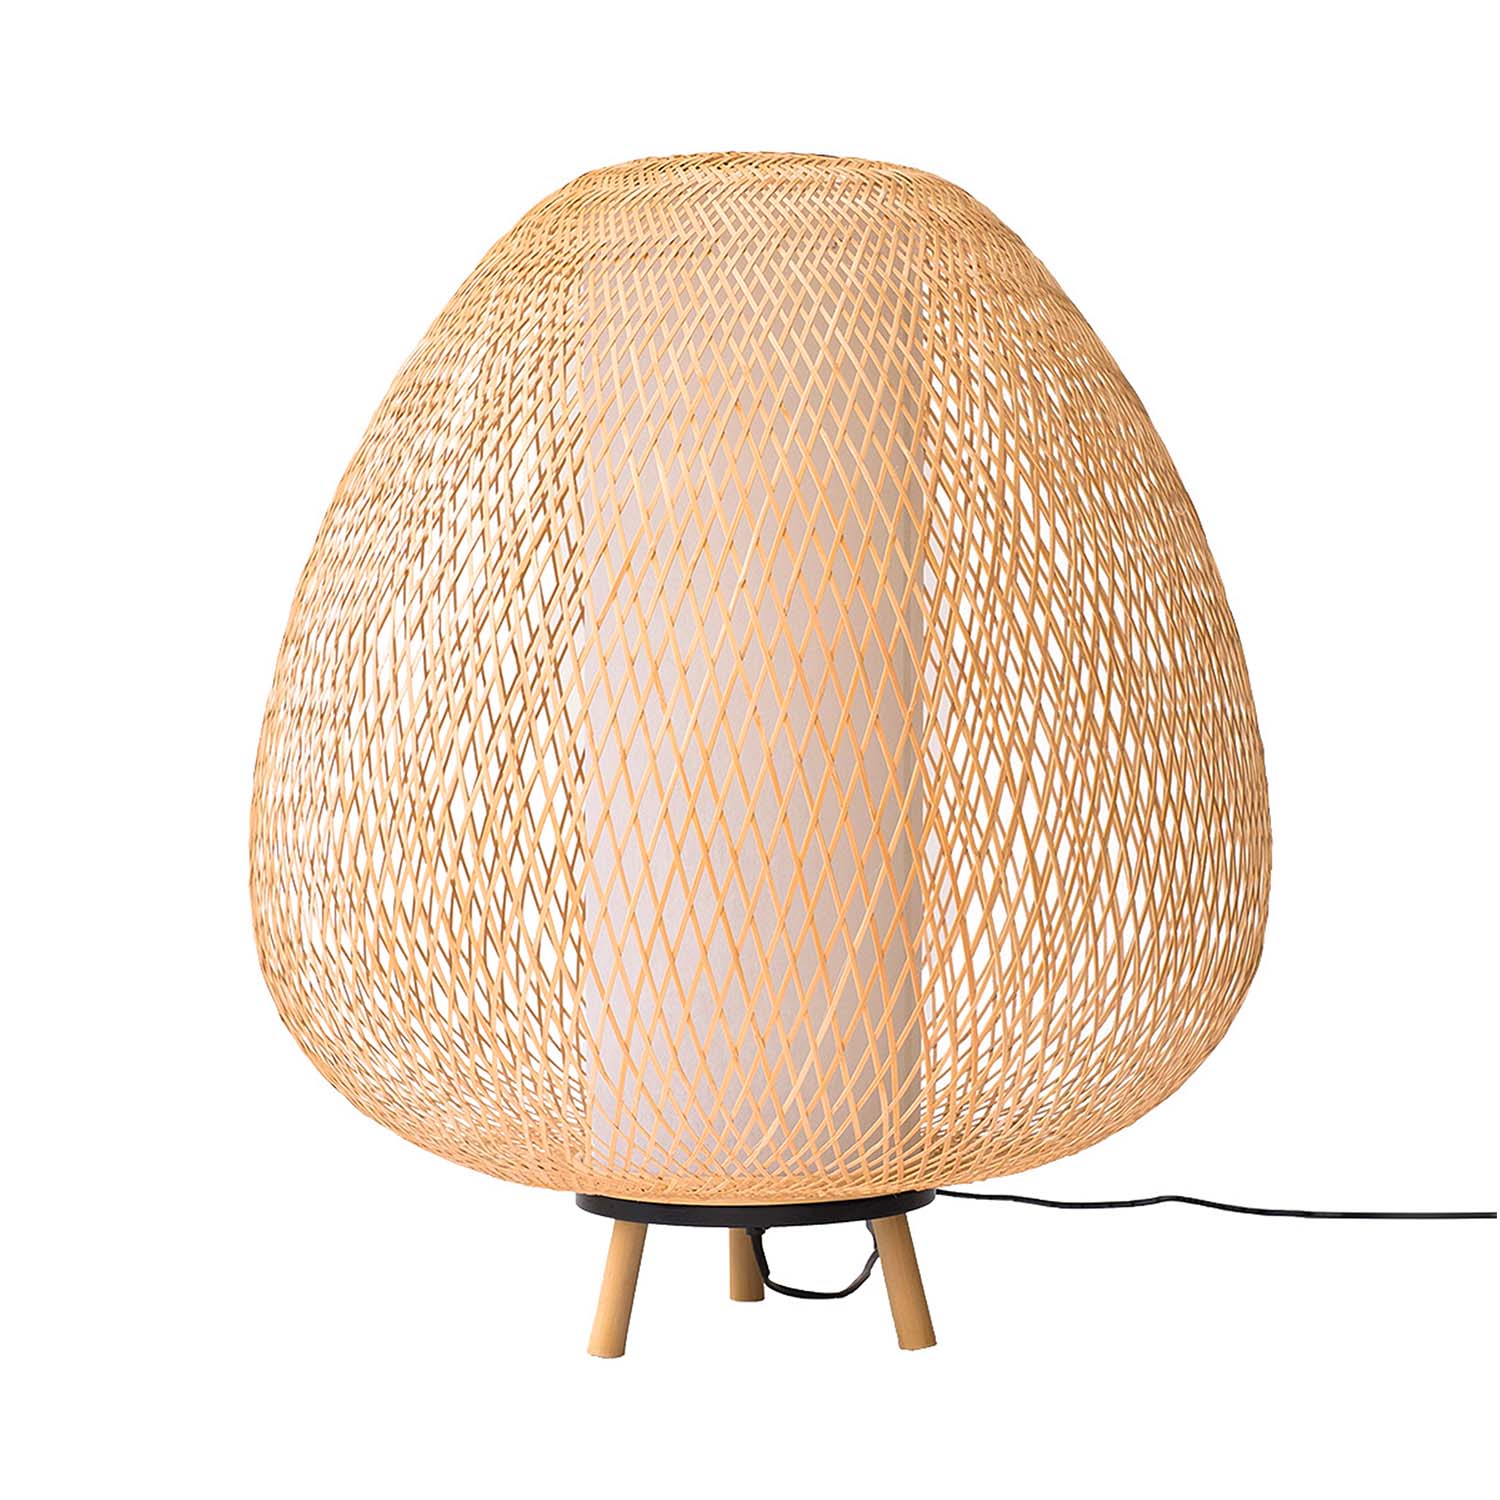 TWIGGY EGG - Lampe sur pied forme oeuf en bambou tressé